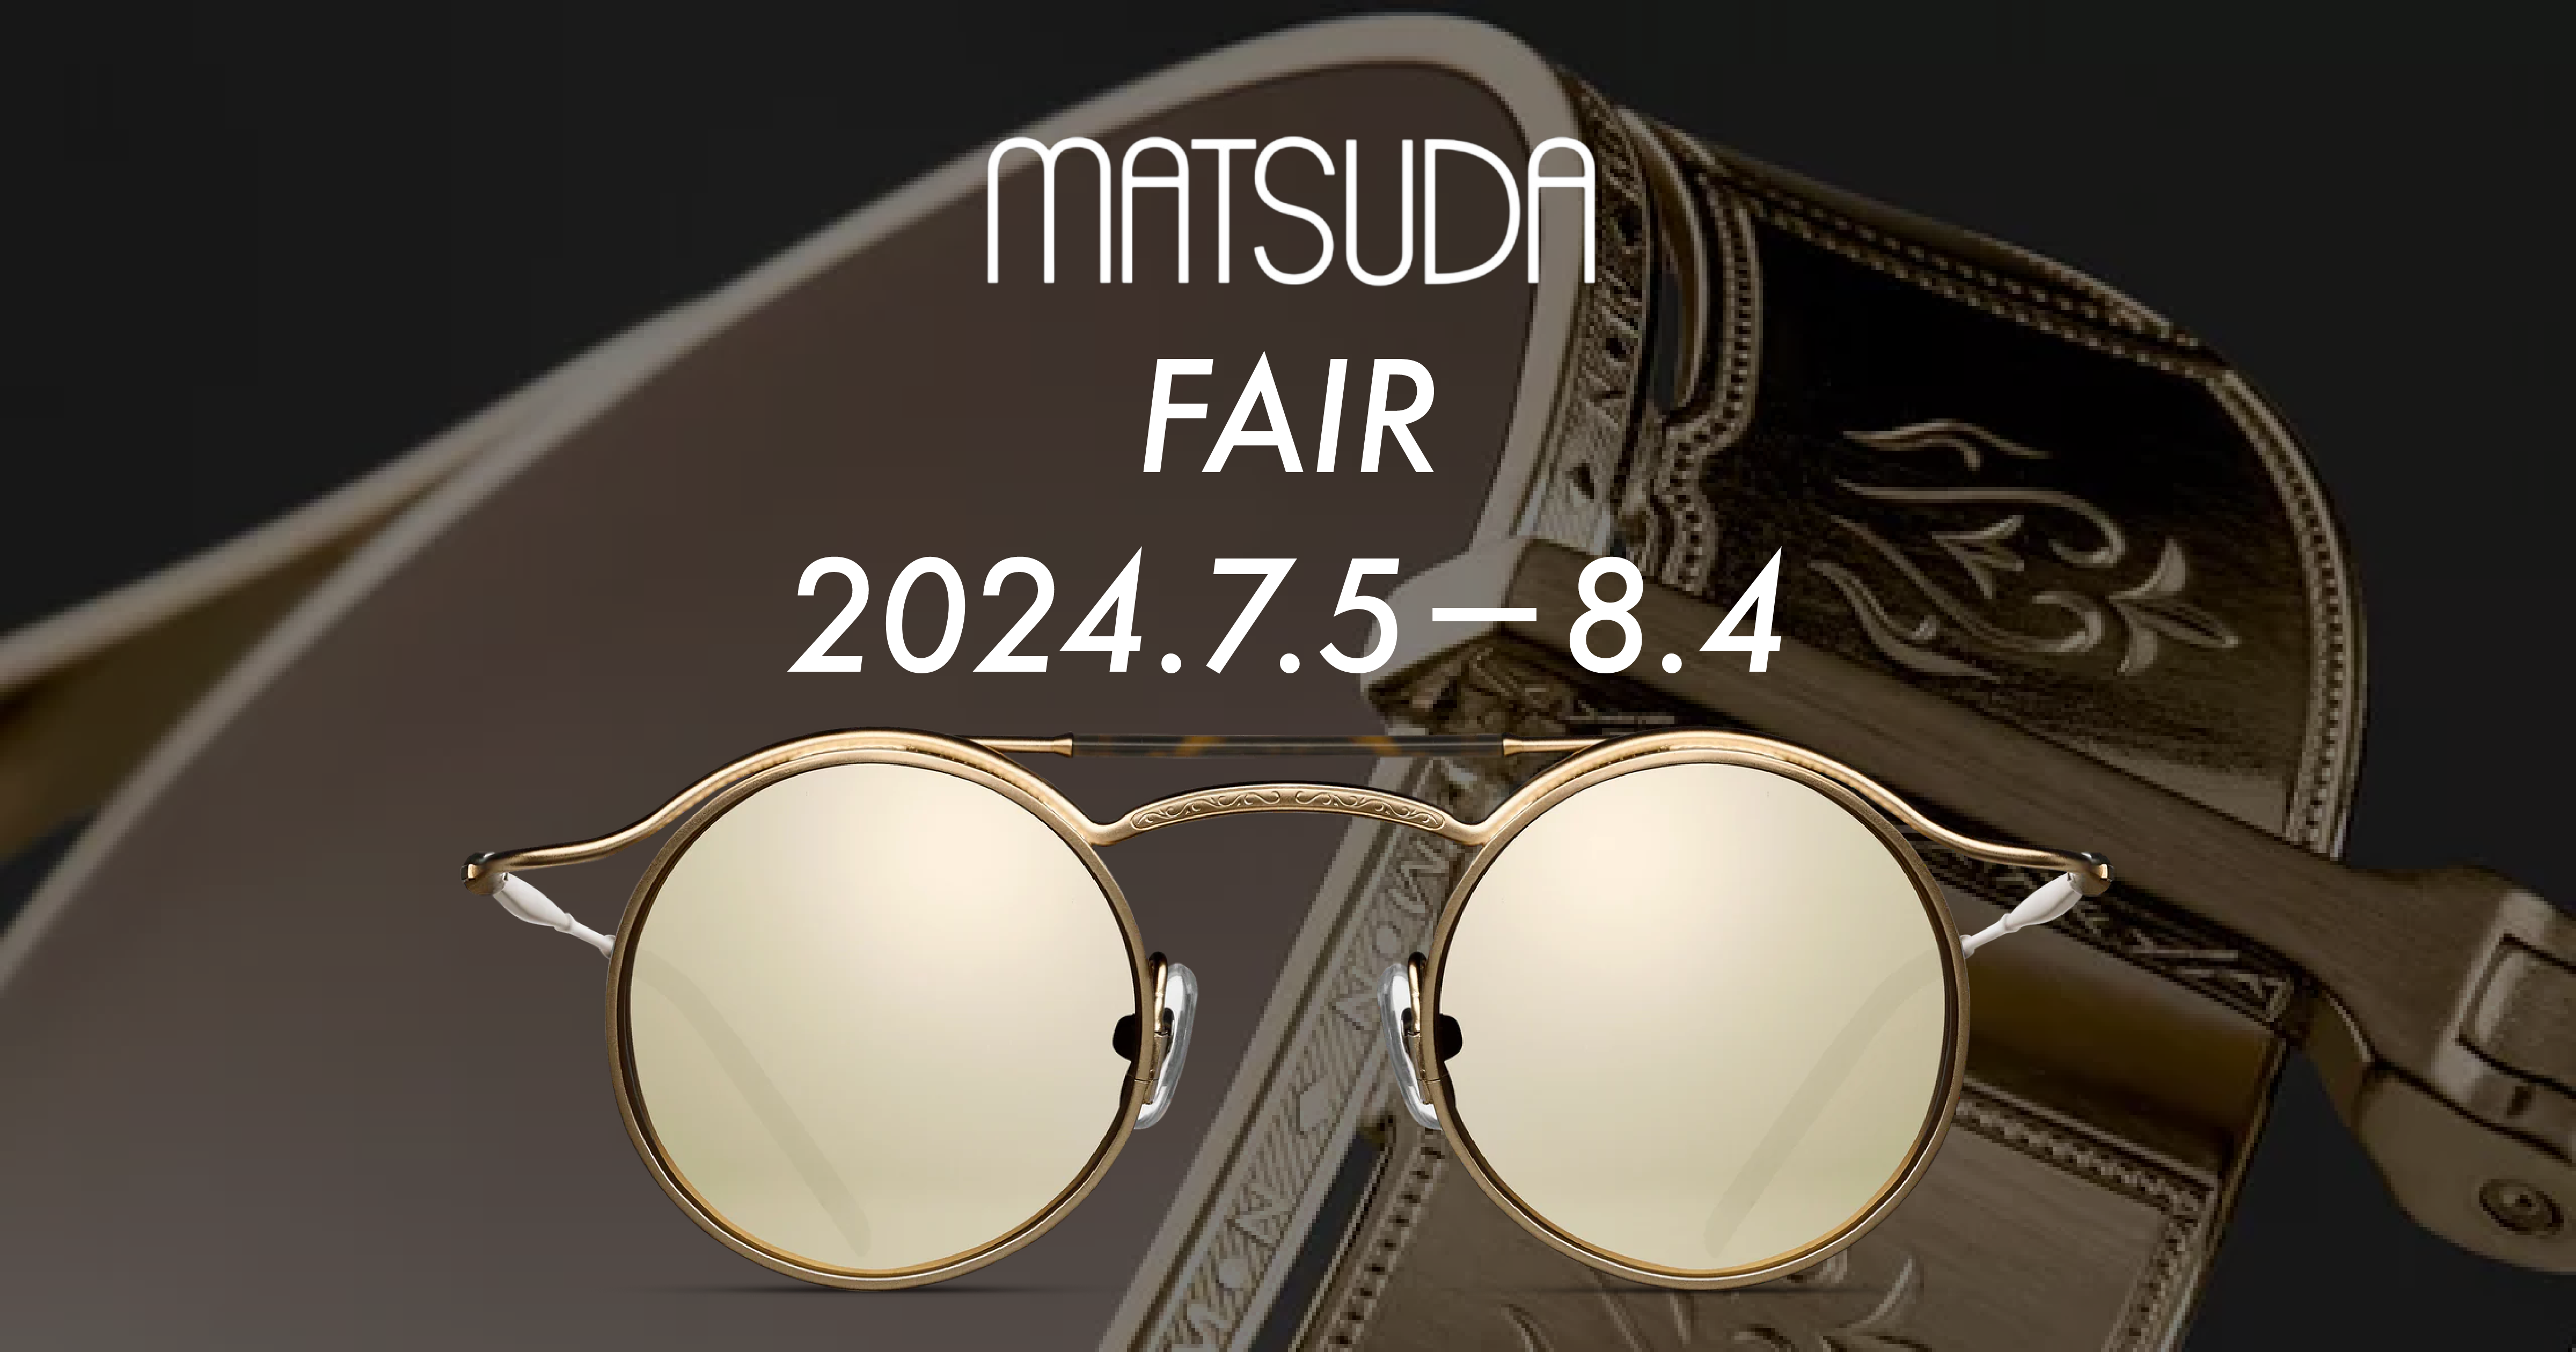 7月5日(金)から全店で「MATSUDA FAIR(マツダフェア)」を開催致します。